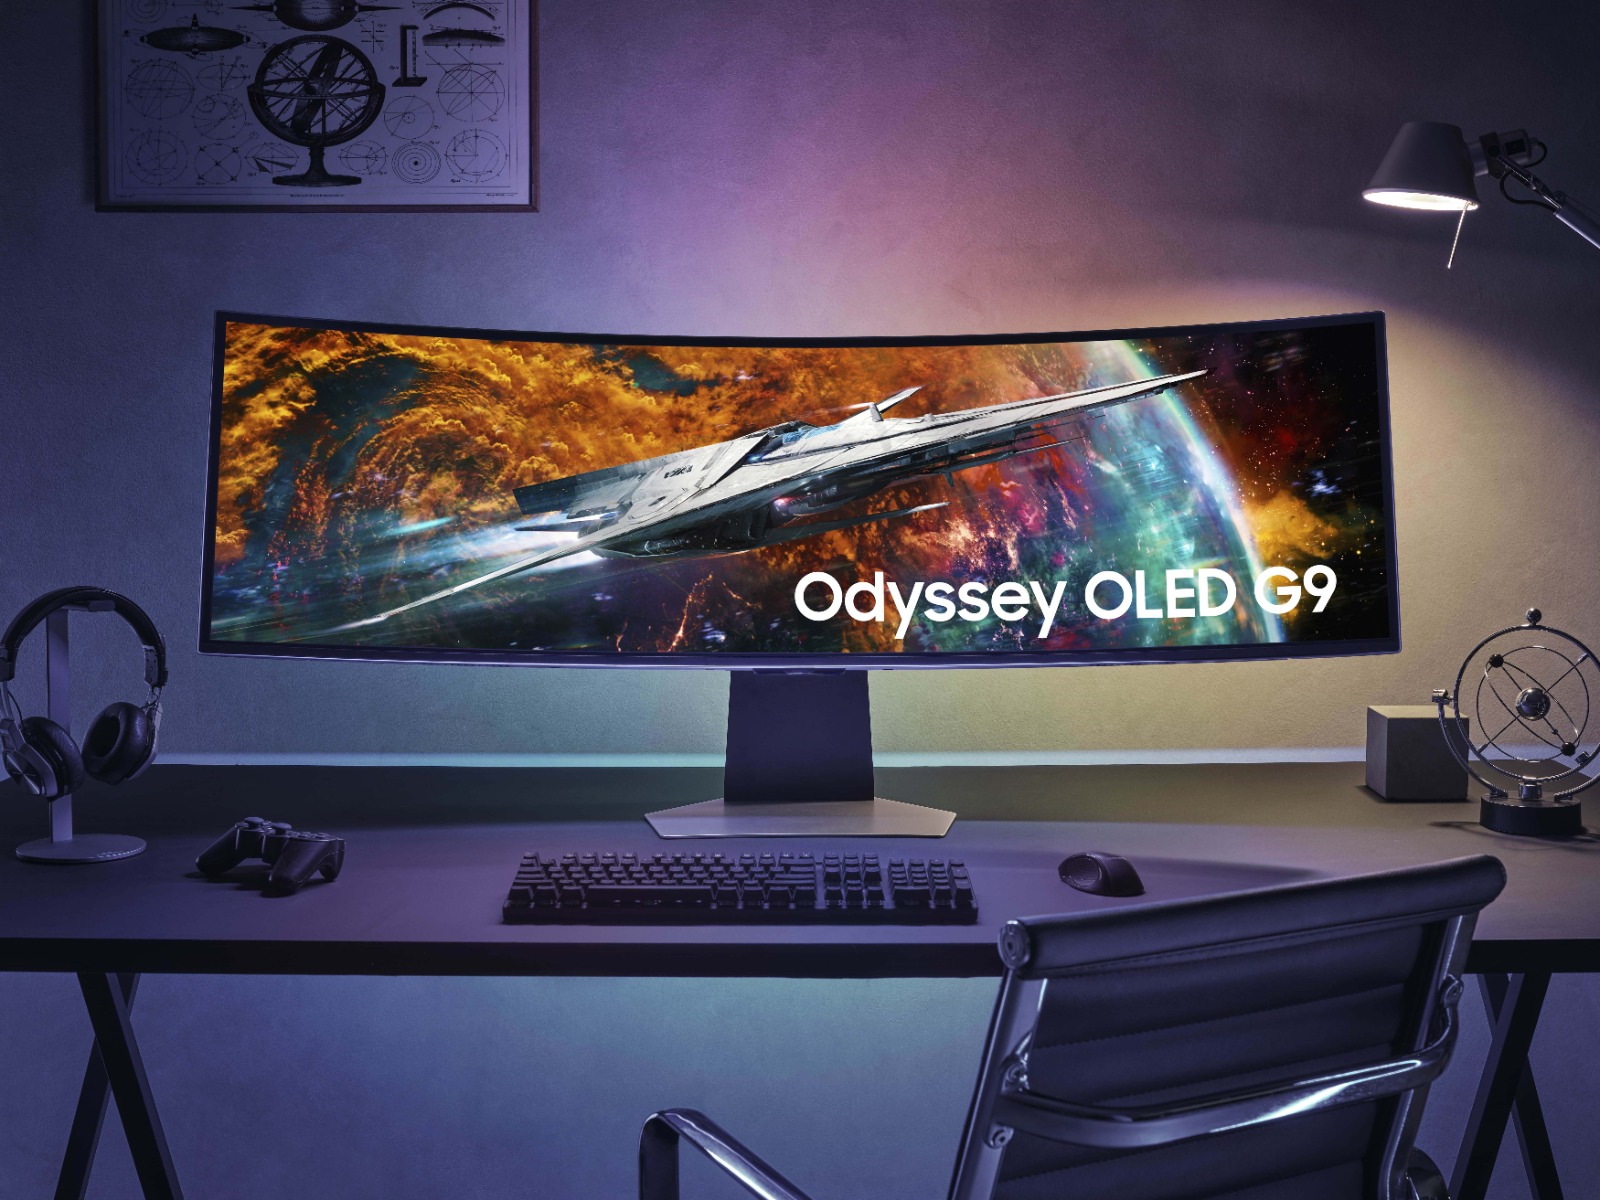 Samsung ra mắt Odyssey OLED G9: Màn hình OLED dành cho game thủ tỷ lệ 32:9 - Ảnh 1.